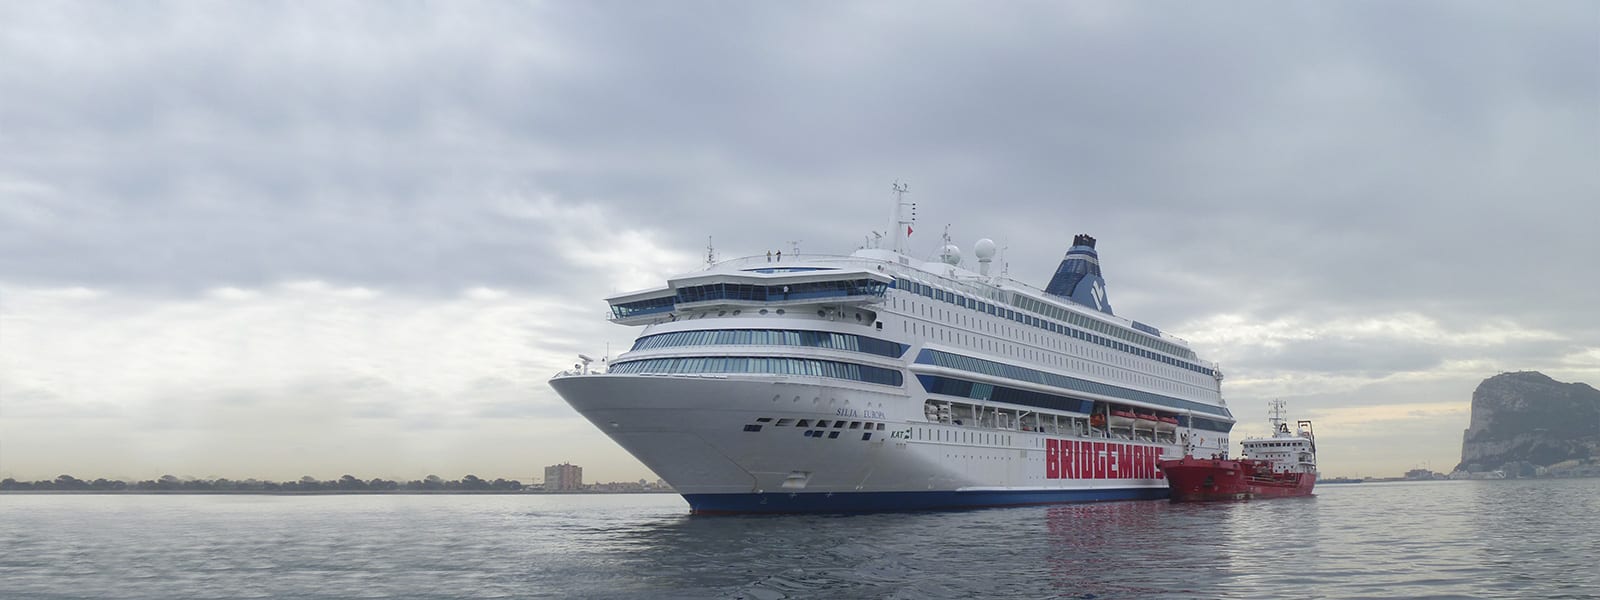 Bridgemans acquires second Baltic Sea ferry